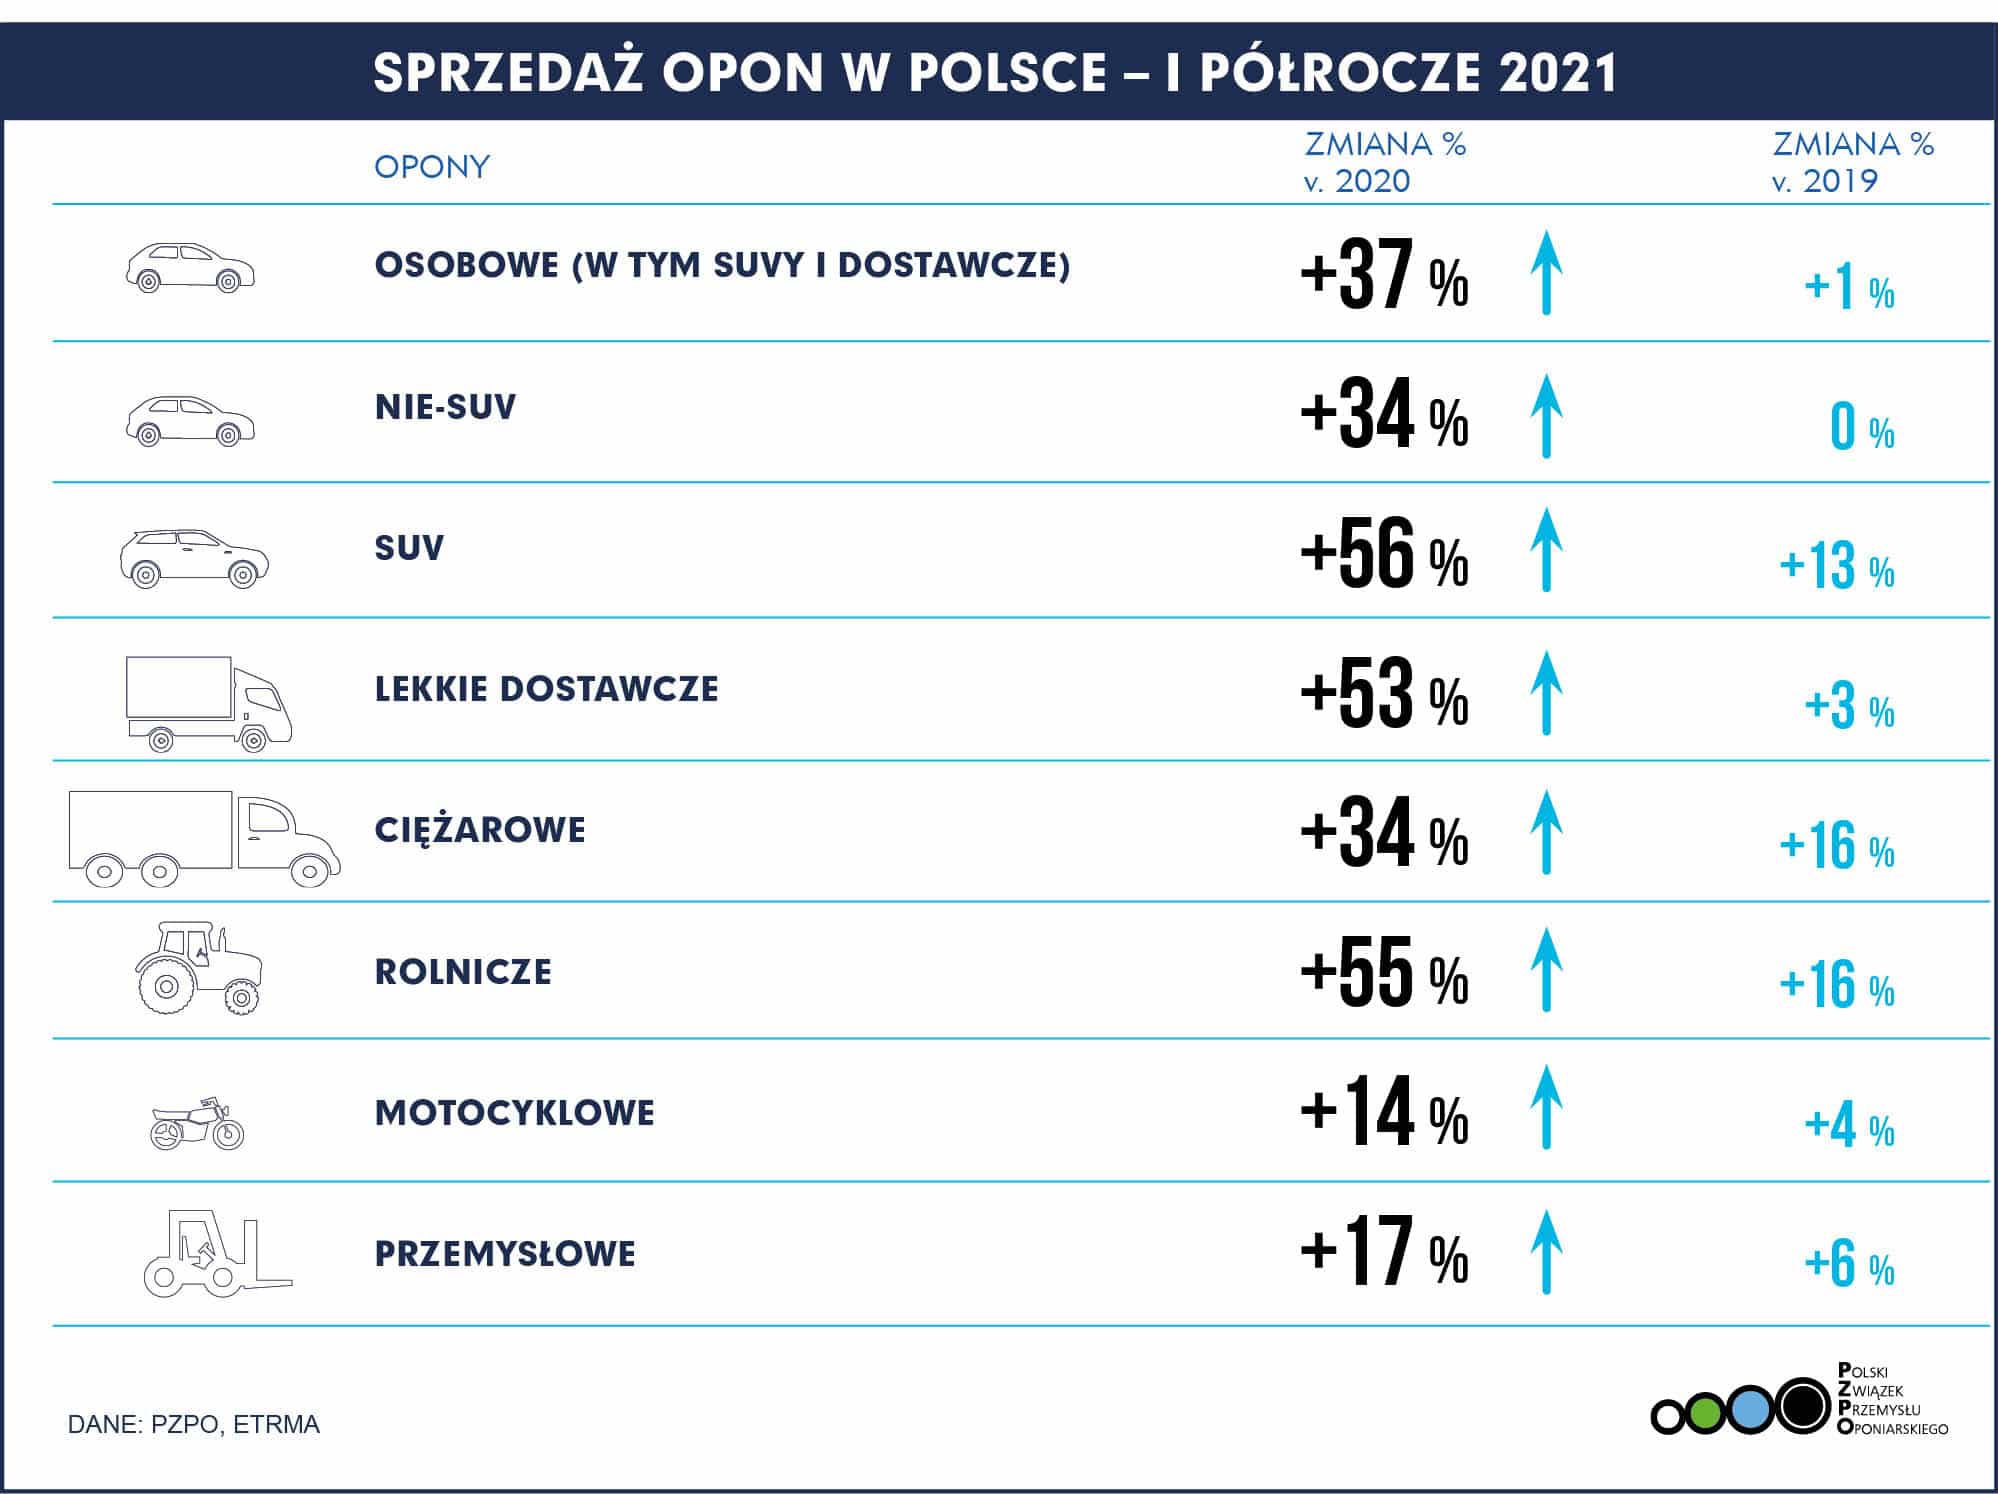 PL Polska – Sprzedaż opon H1 2021